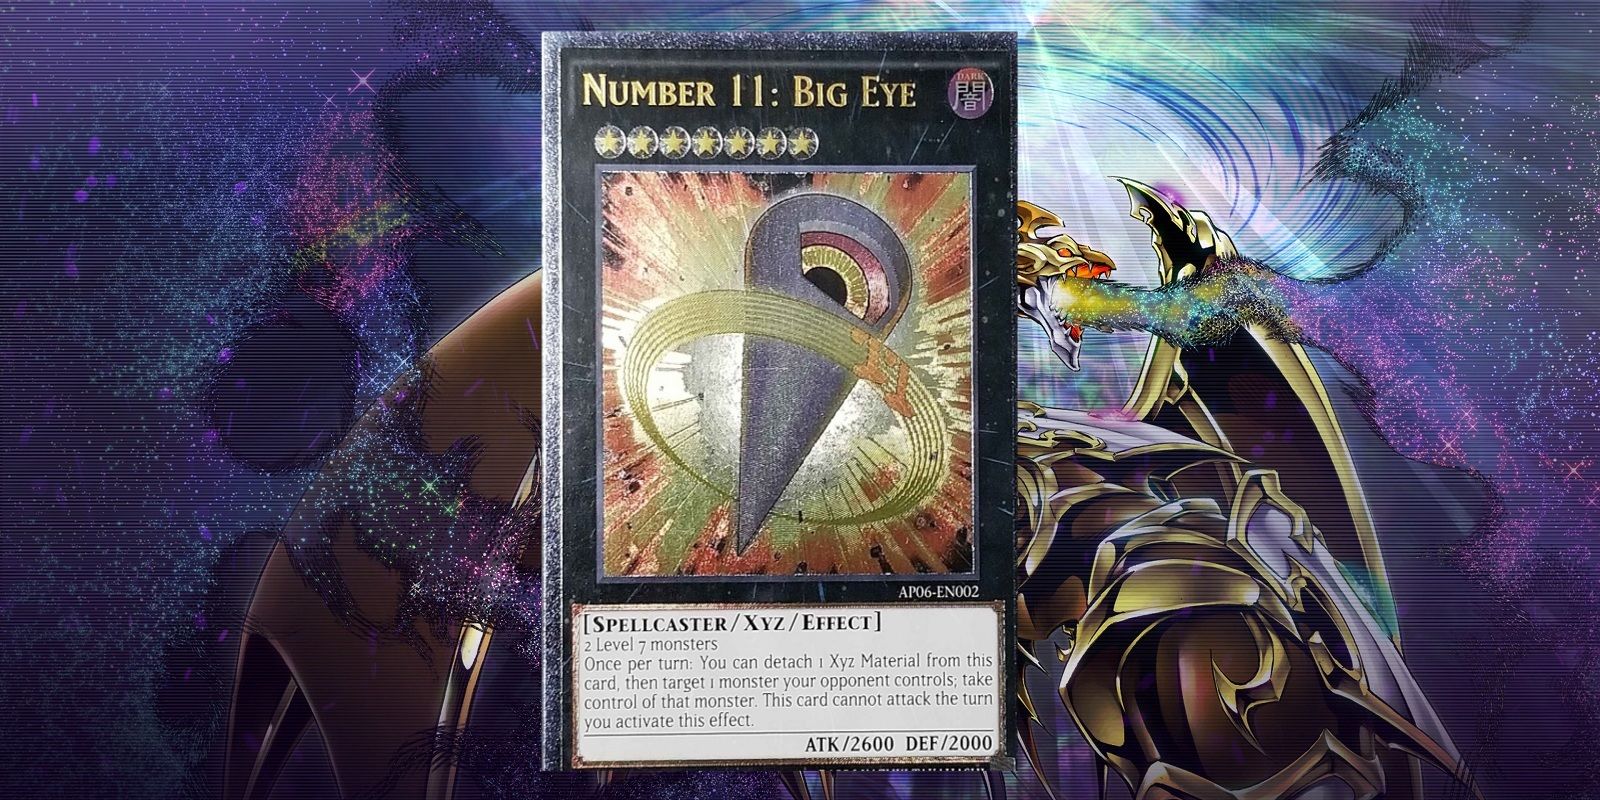 Yu-Gi-Oh! Number 11 Big Eye card